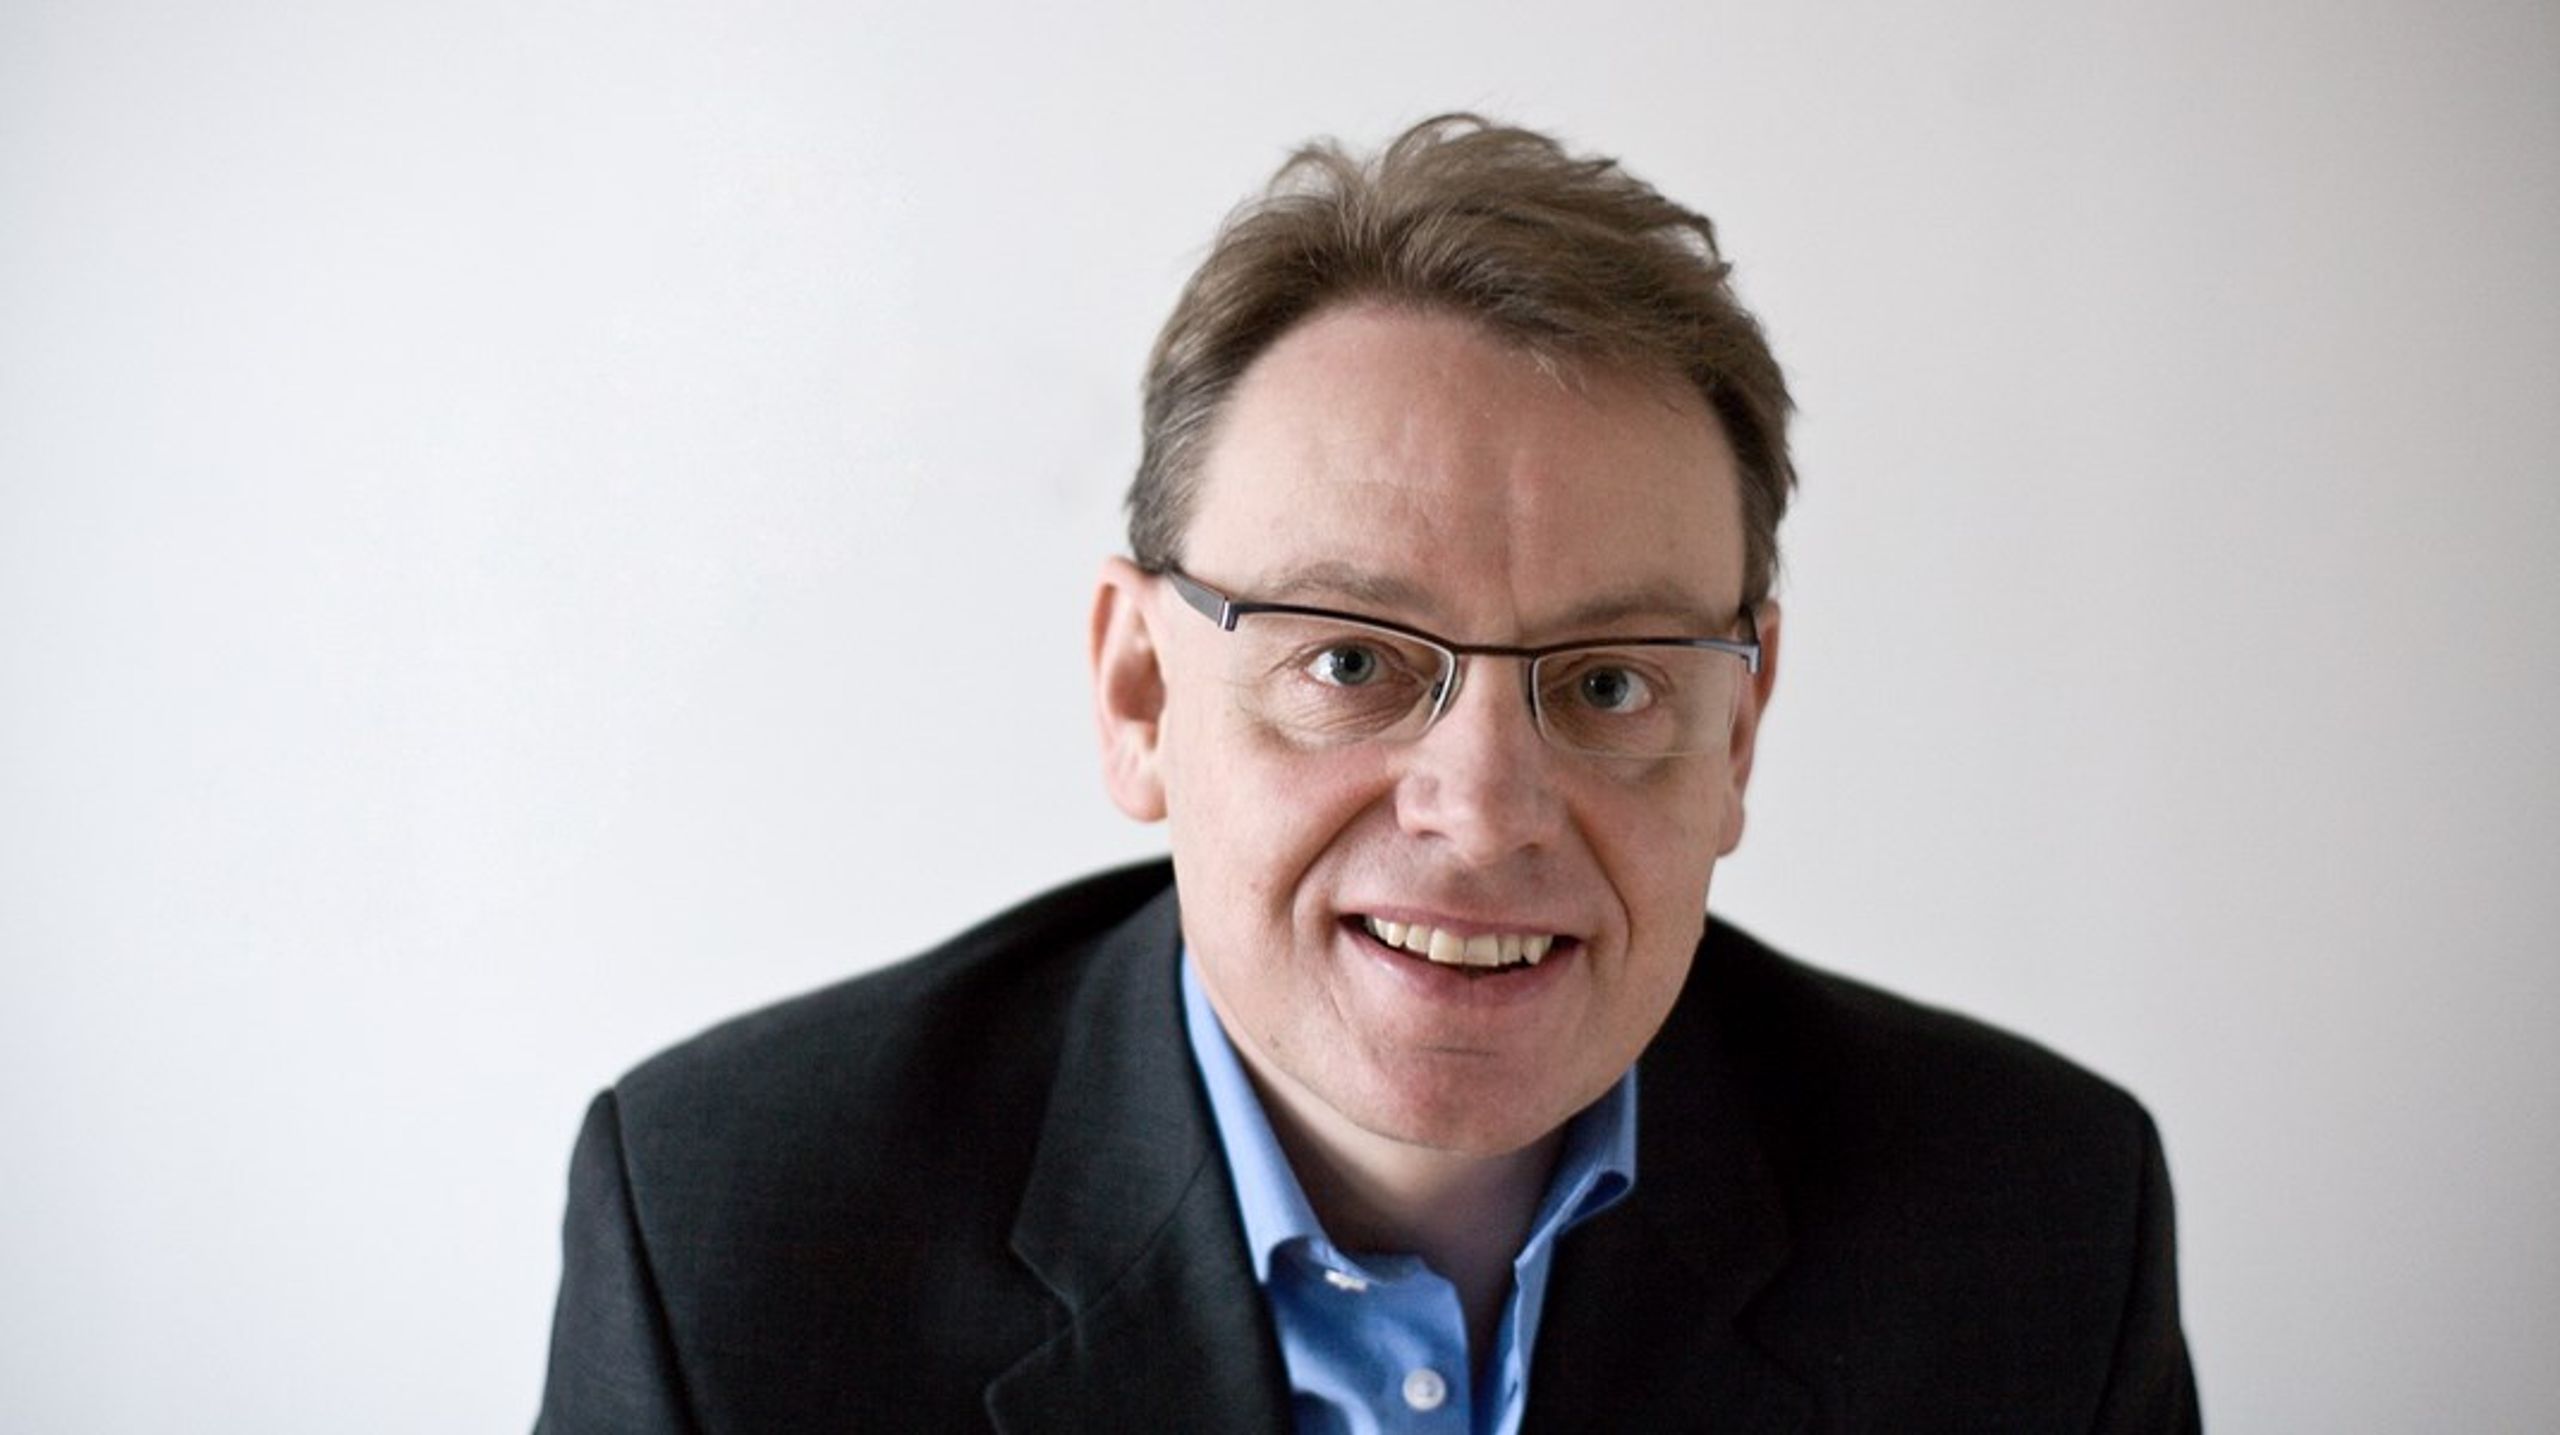 Jann Sjursen var minister under Nyrup-regeringen i 90'erne, leder af Kristeligt Folkeparti og sad i Folketinget fra 1998-2005.